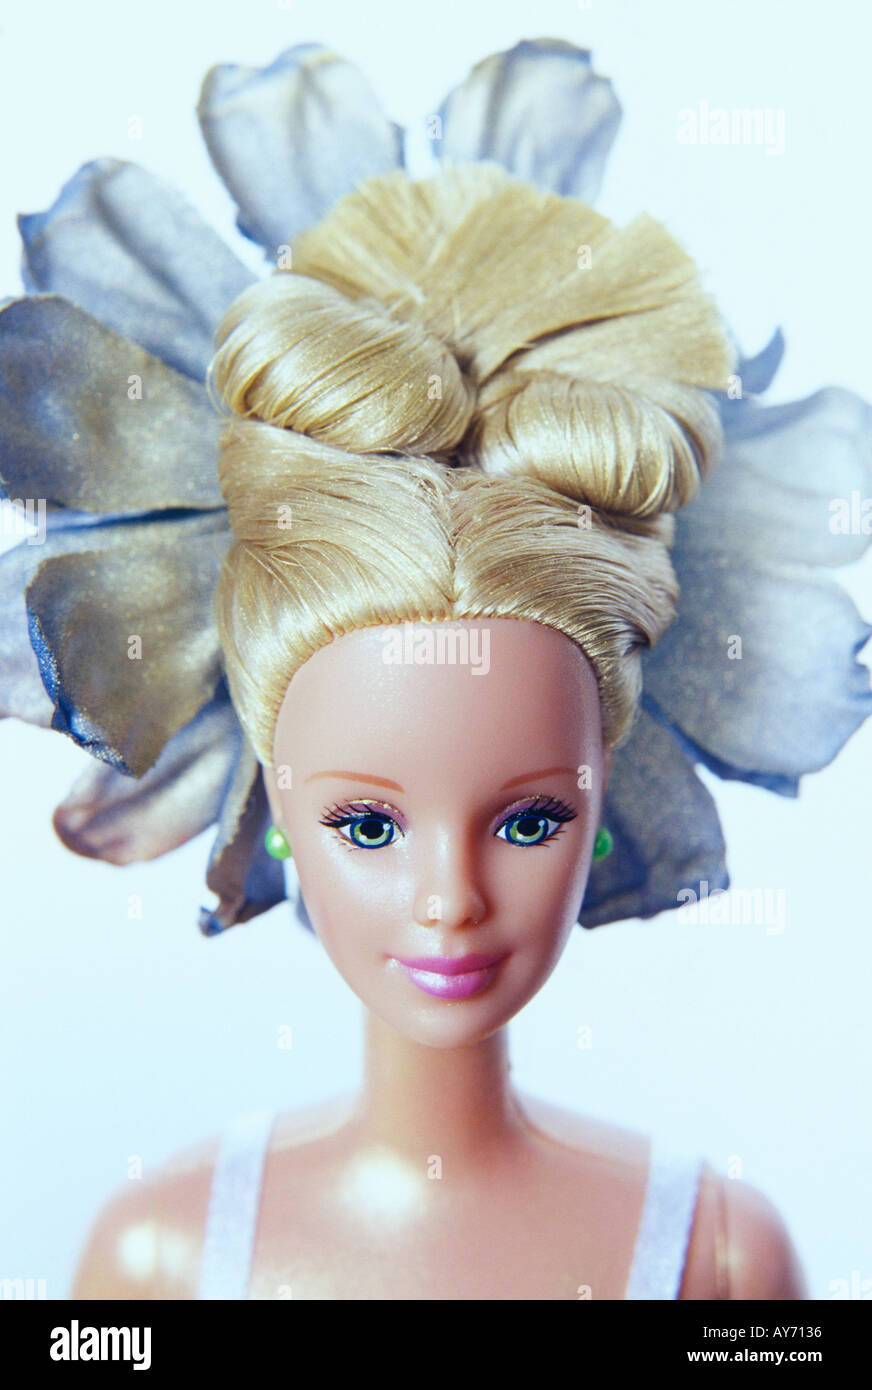 Barbie-Puppe mit wilder Frisur Stockfotografie - Alamy